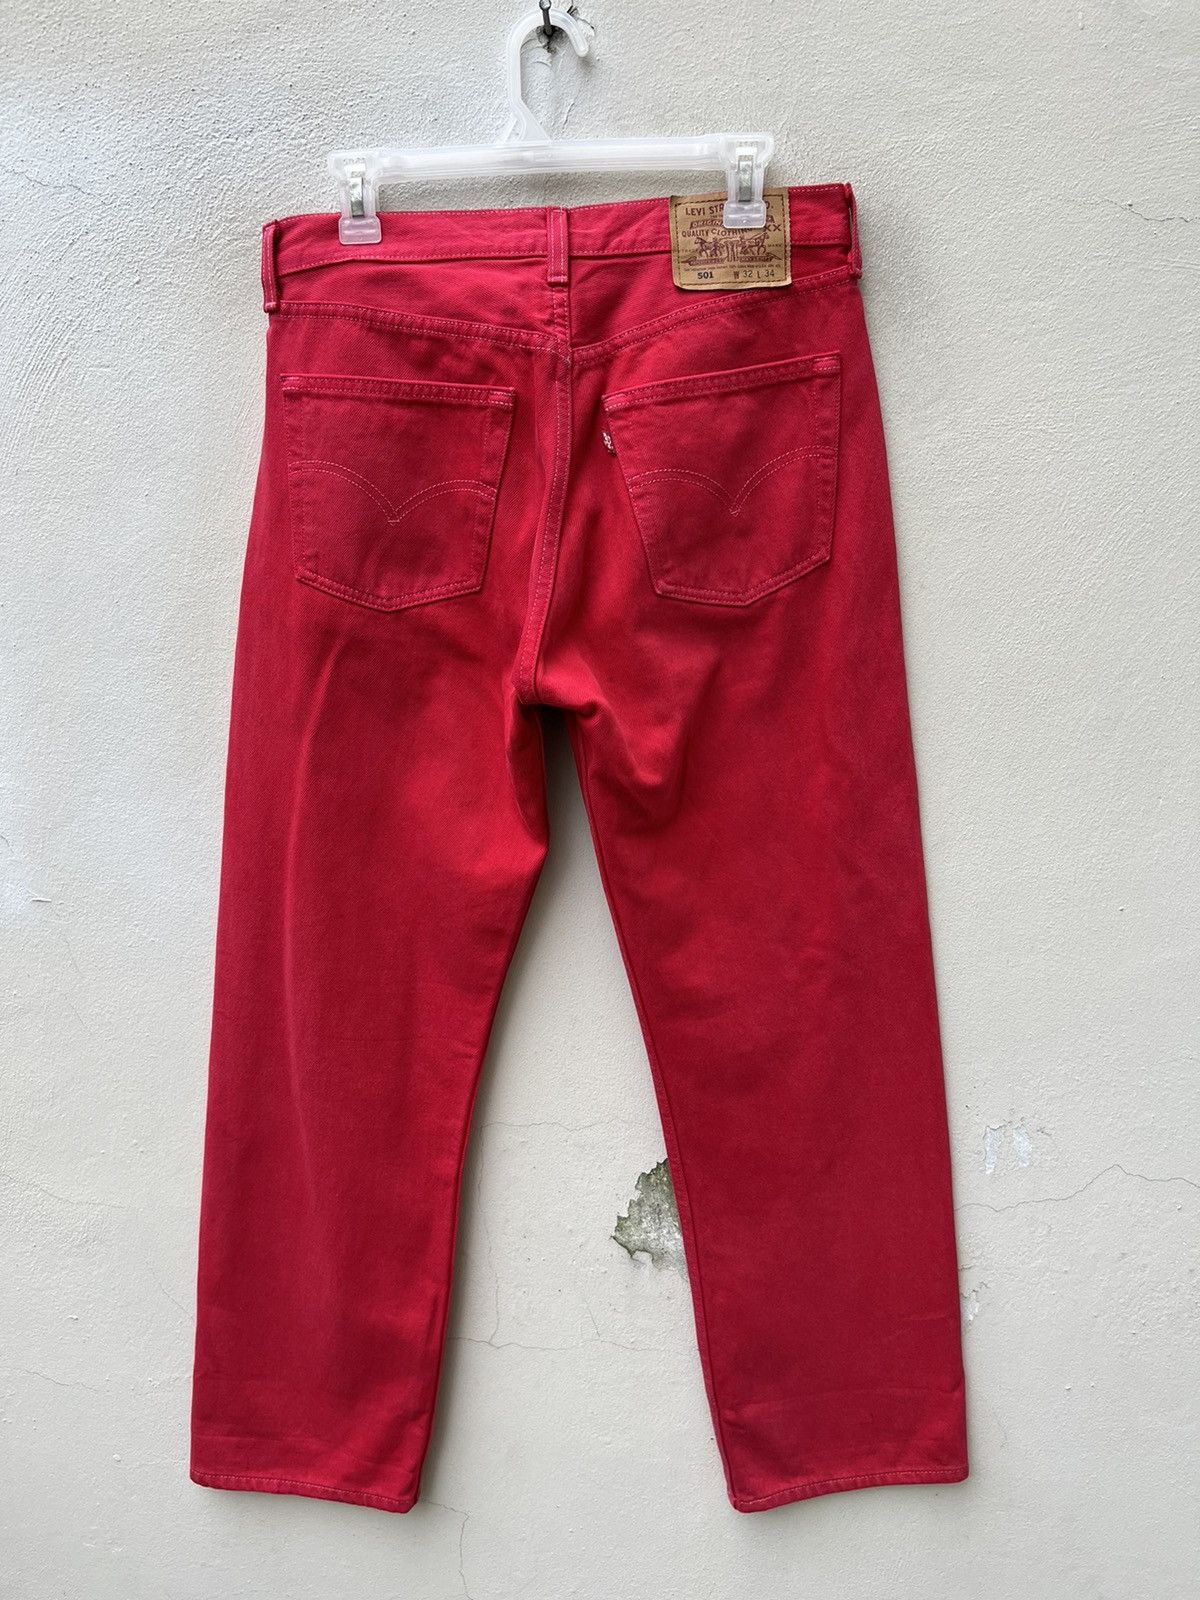 Vintage Vintage 1999 Levi’s 501 Fade Red Denim Jeans Size US 31 - 14 Thumbnail